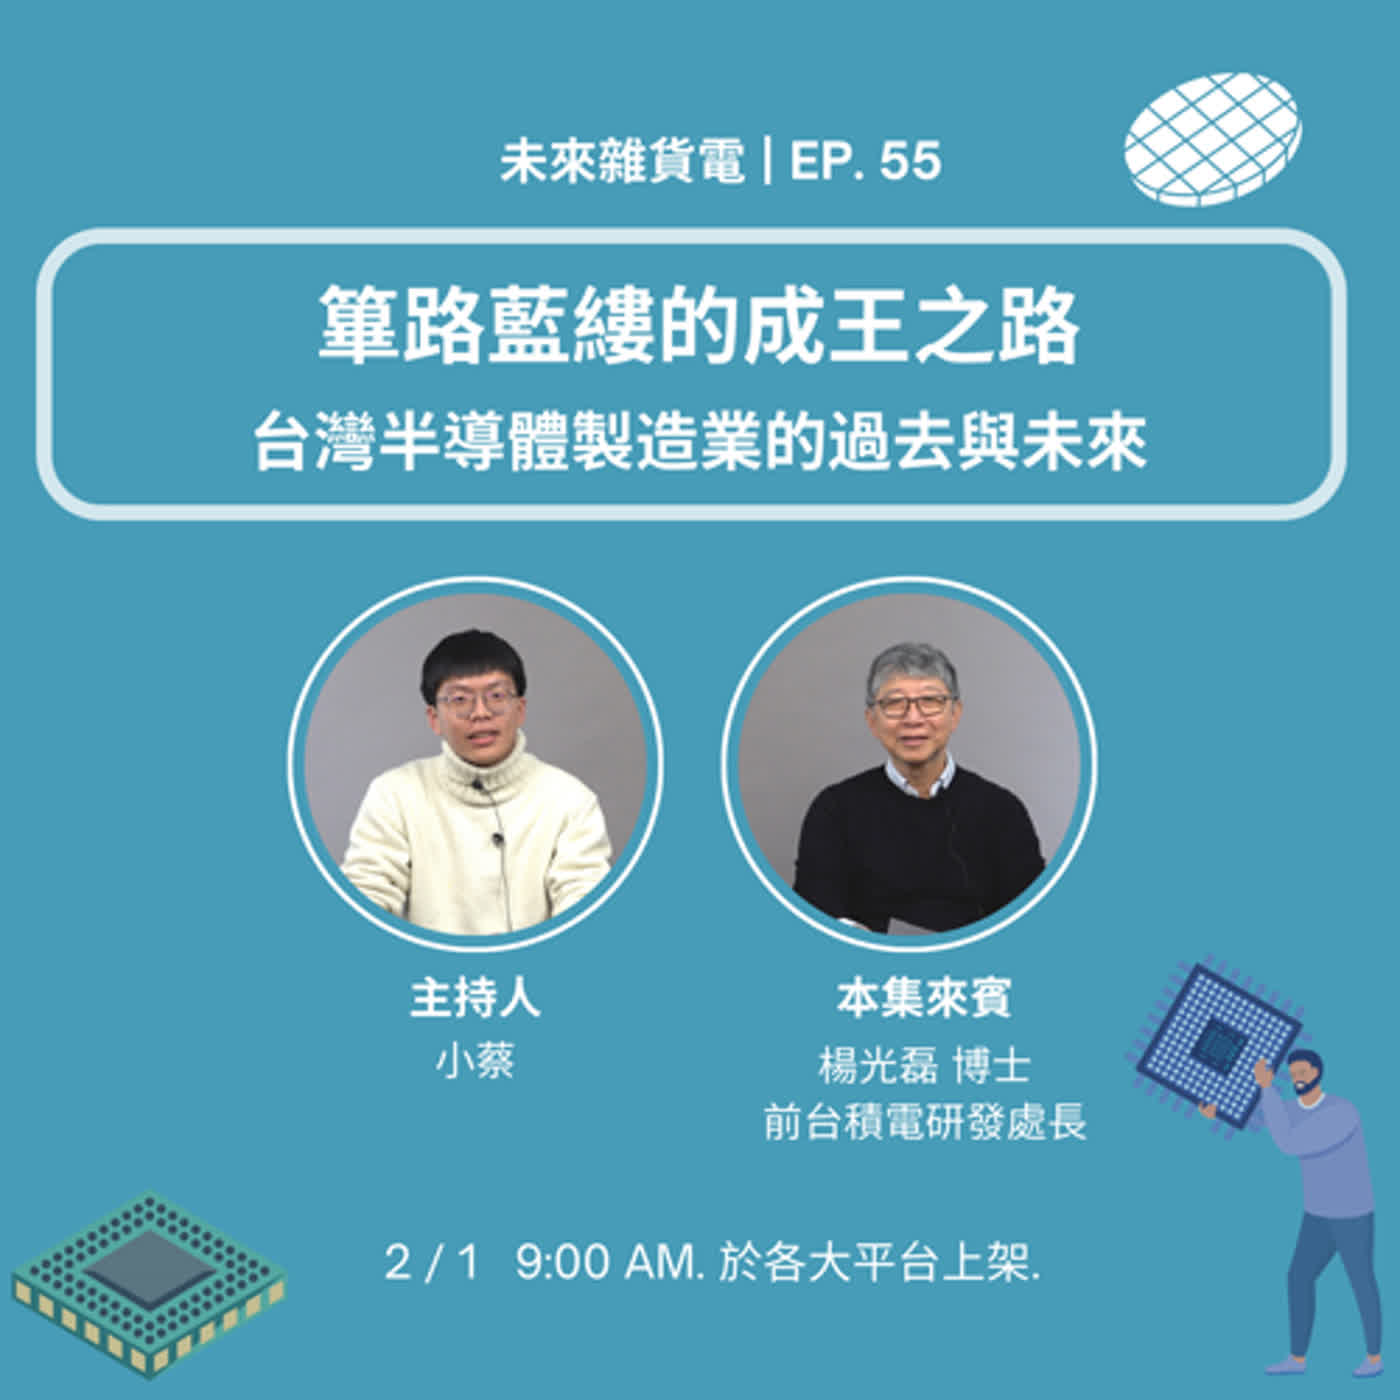 EP55 | 蓽路藍縷的成王之路 | 台灣半導體製造業的過去與未來 / 專訪前台積電研發處長 楊光磊博士(上)